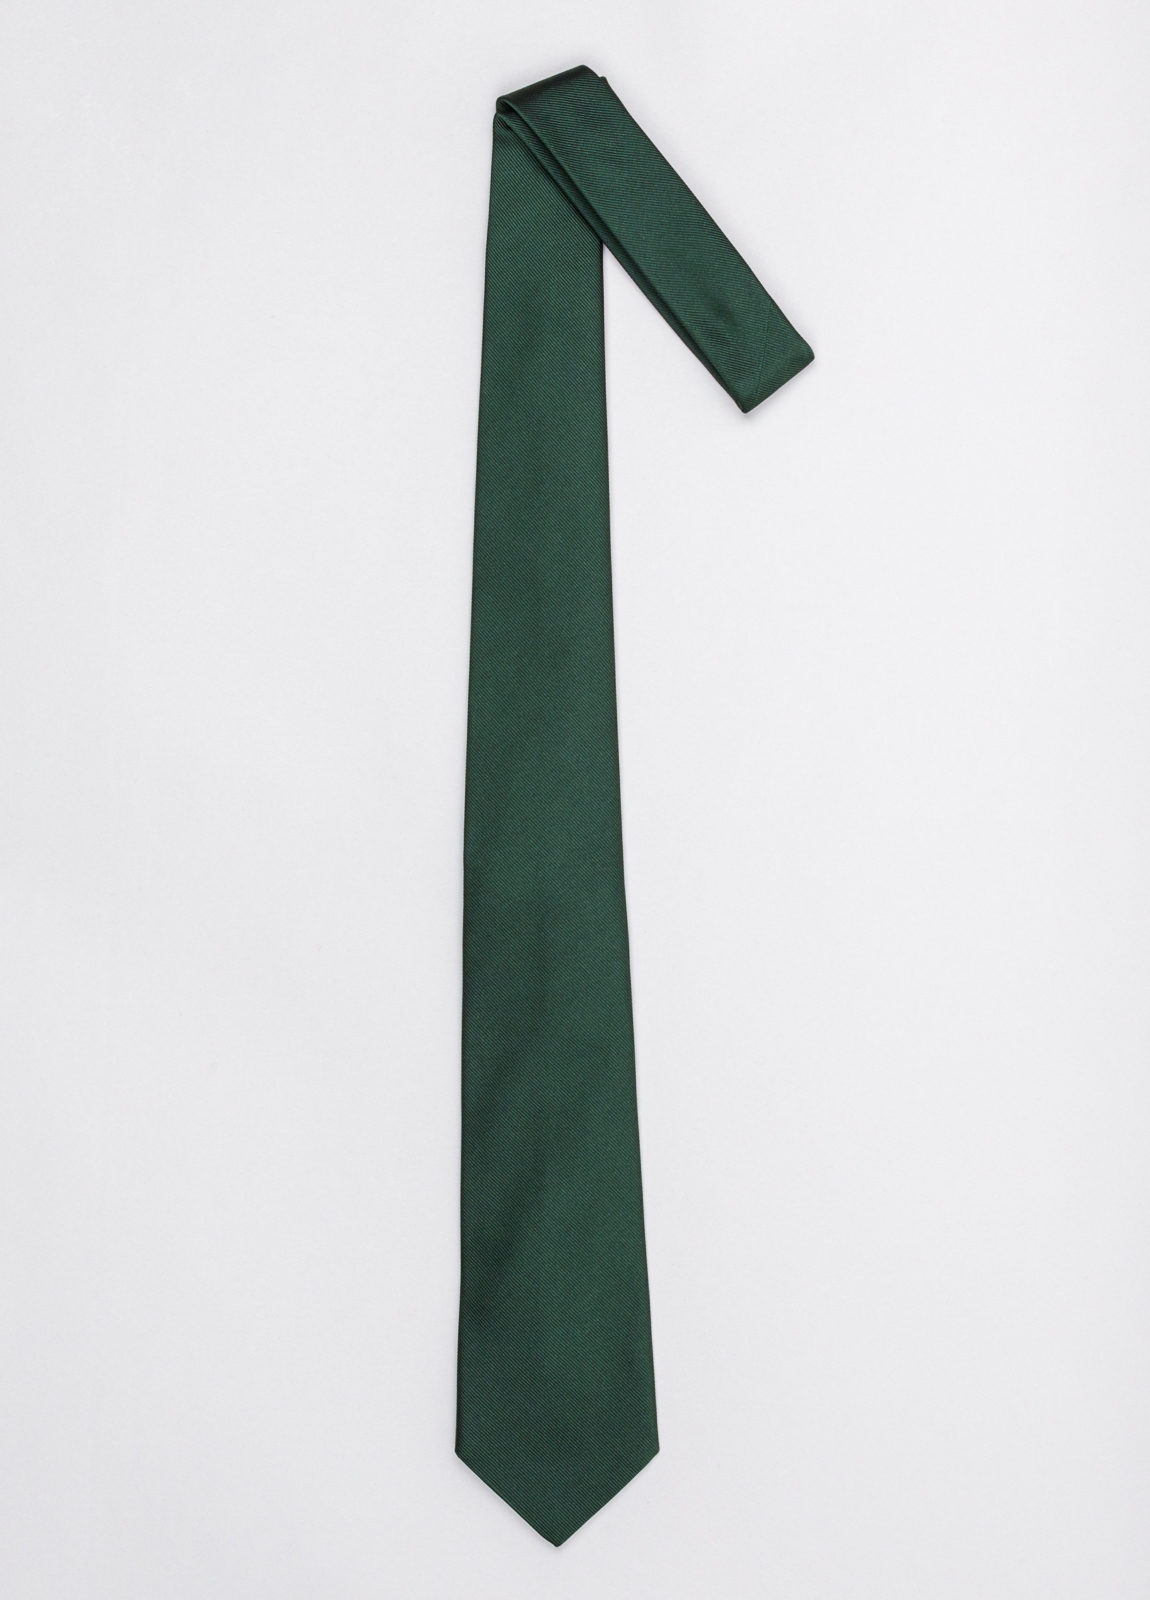 Corbata FUREST COLECCIÓN color verde twill - Ítem1